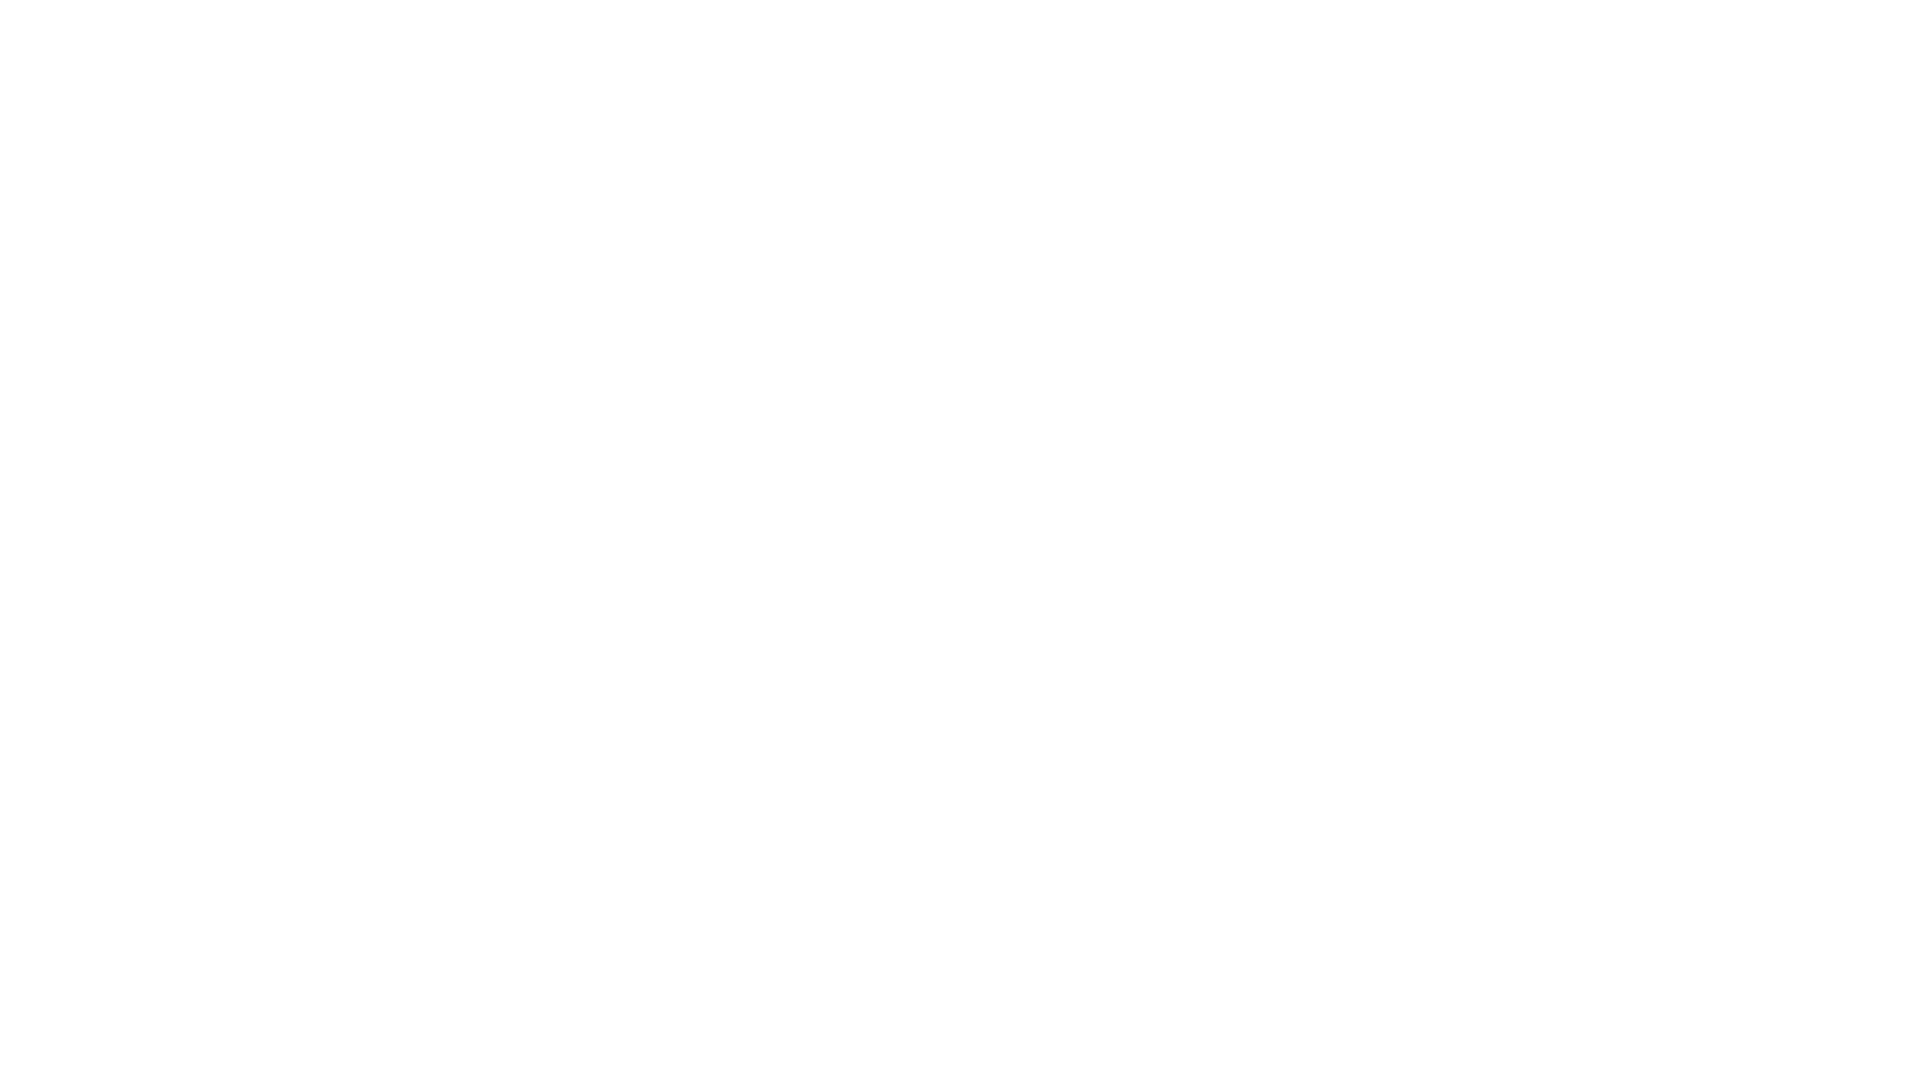 ANNEX DIGITAL